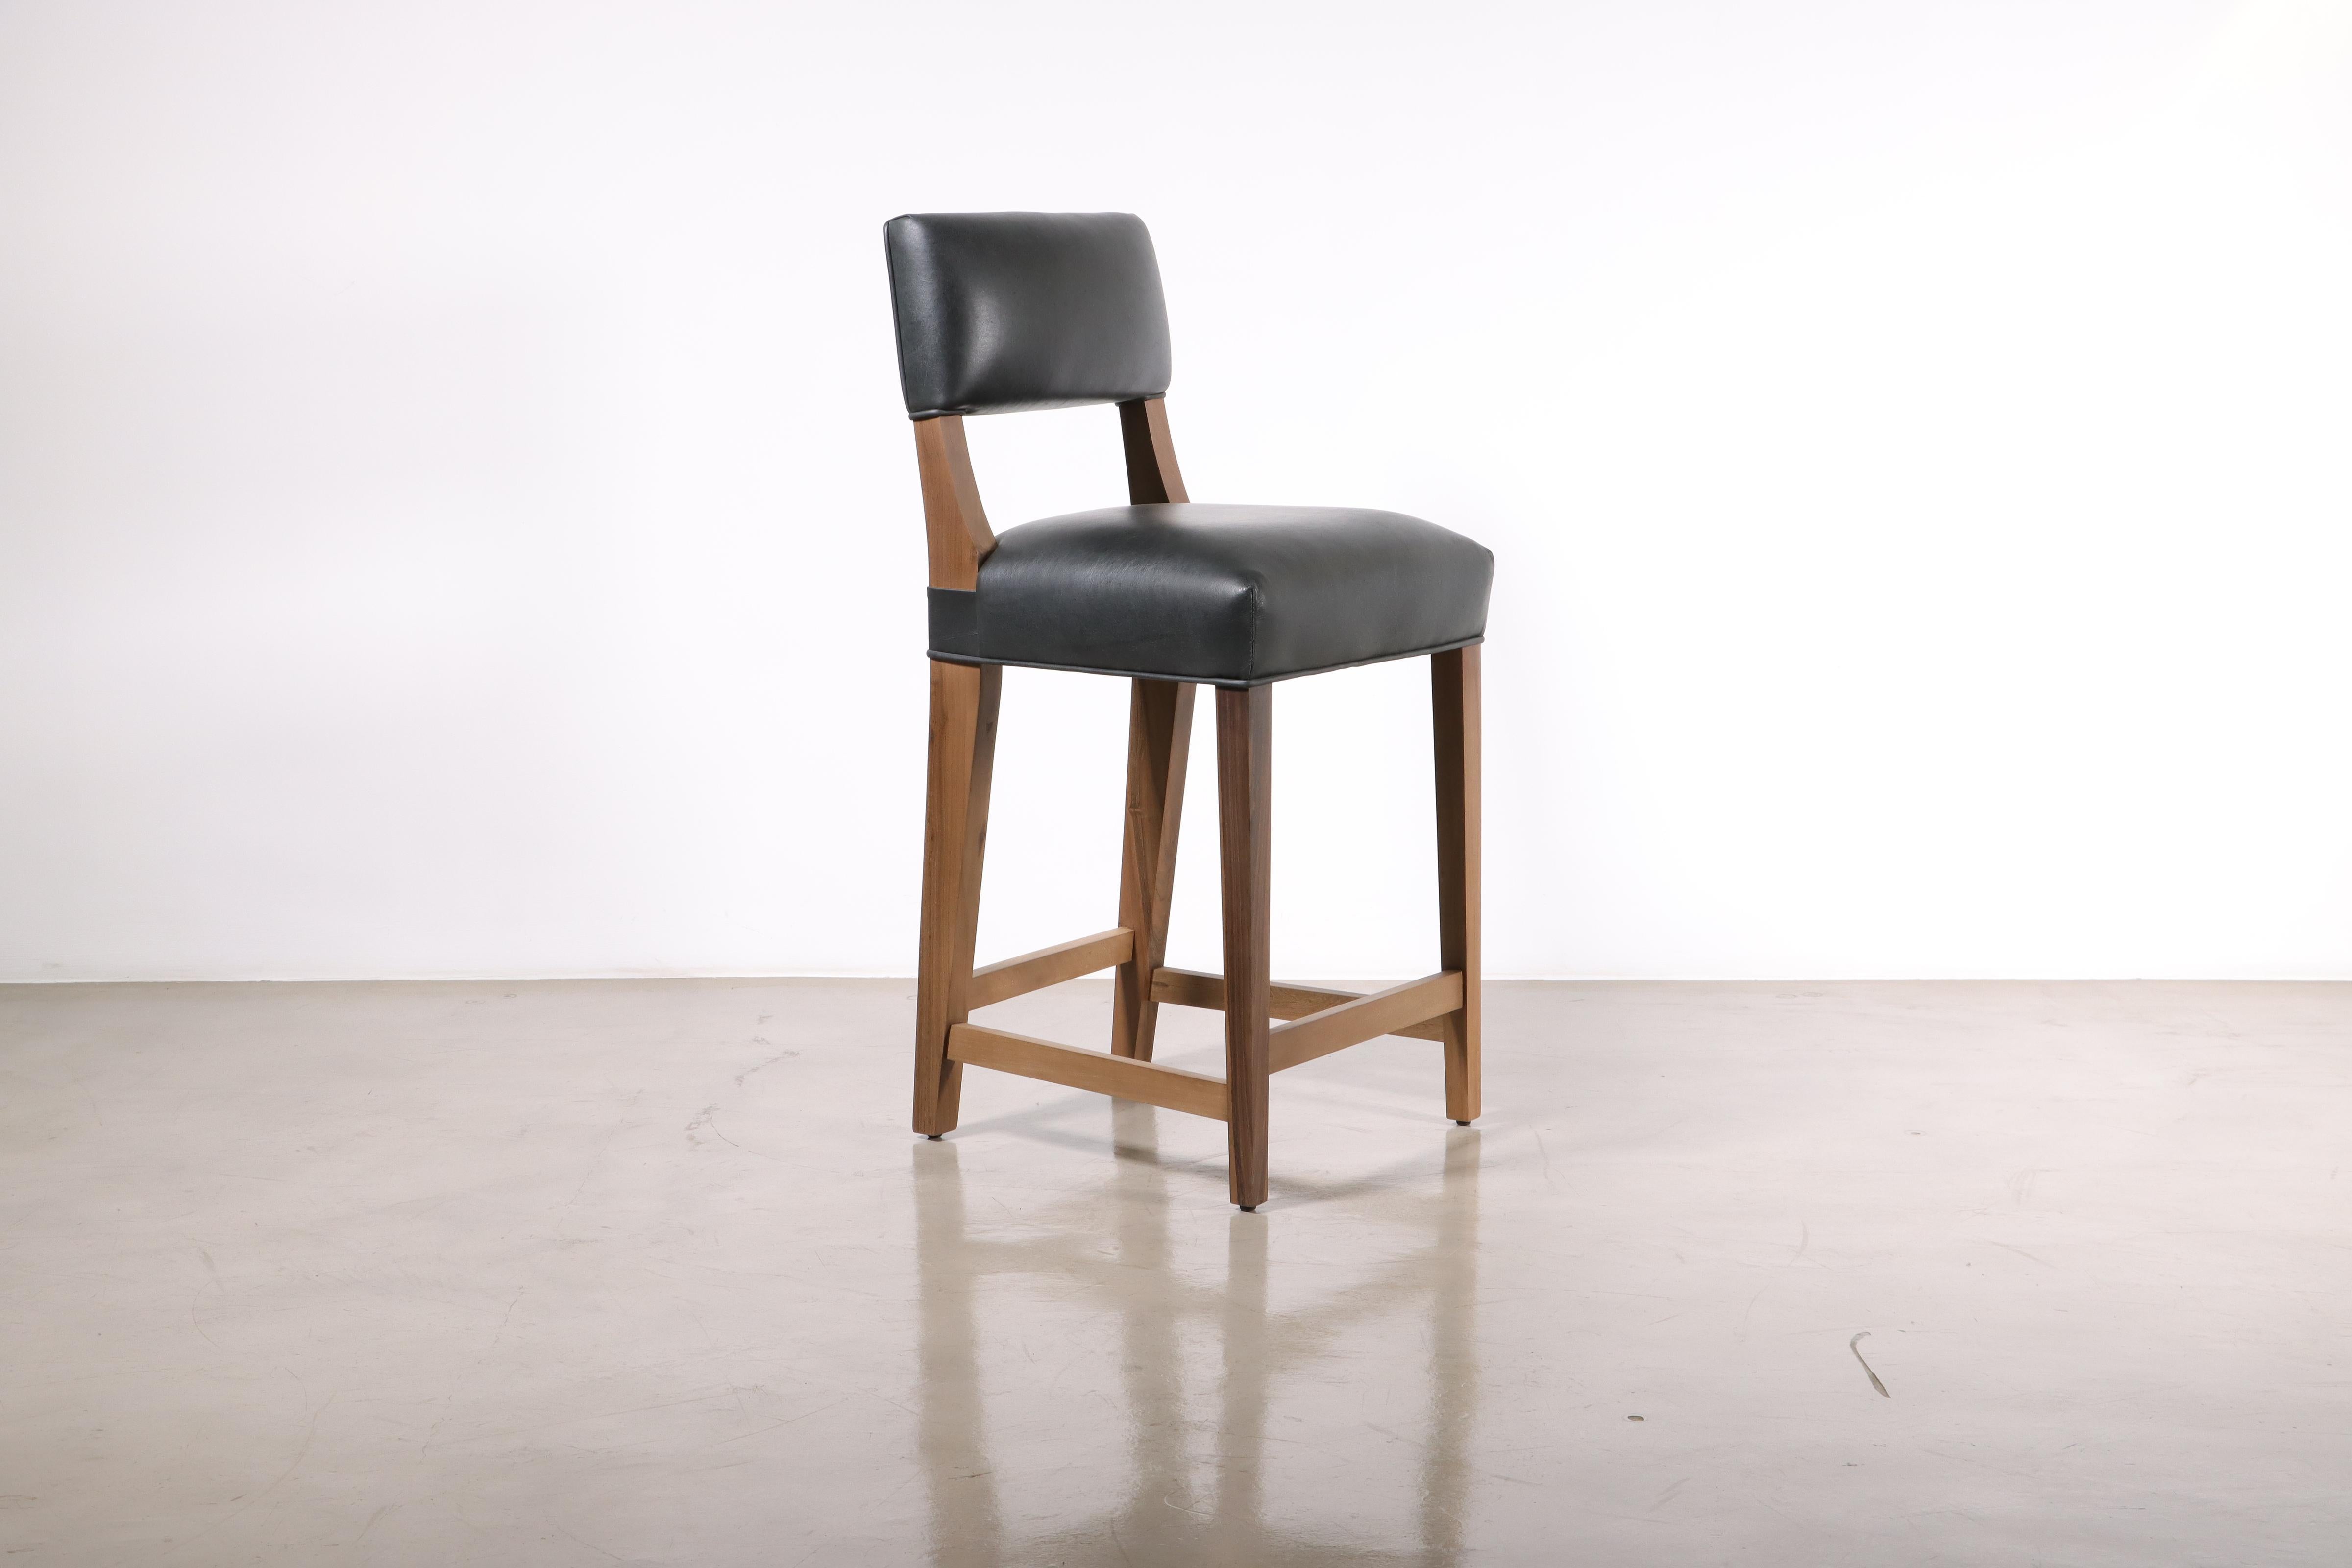 Costantini ist stolz darauf, die schönsten und härtesten Harthölzer für die Herstellung seiner Sitzmöbel zu verwenden. Der Bruno Hocker aus argentinischem Palisanderholz hat eine relativ niedrige, kantige Rückenlehne, die an den gleichnamigen Stuhl